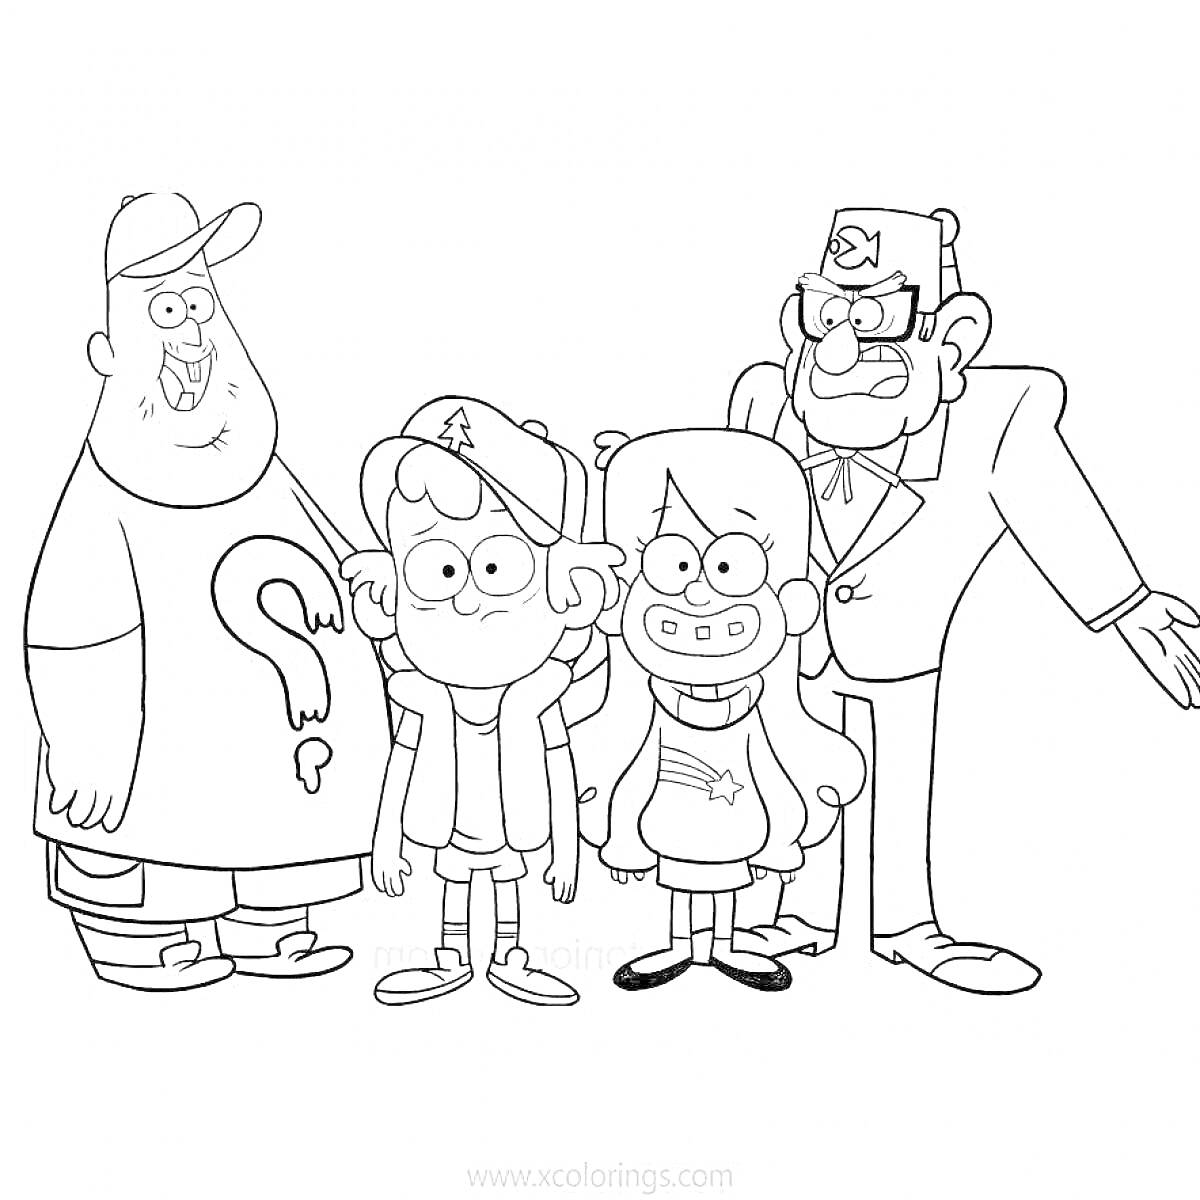 Раскраска с четырьмя персонажами из мультфильма (мальчик в кепке, девочка с длинными волосами и свитером, мужчина в костюме с феской, и мужчина с бородой в кепке и футболке с вопросительным знаком)